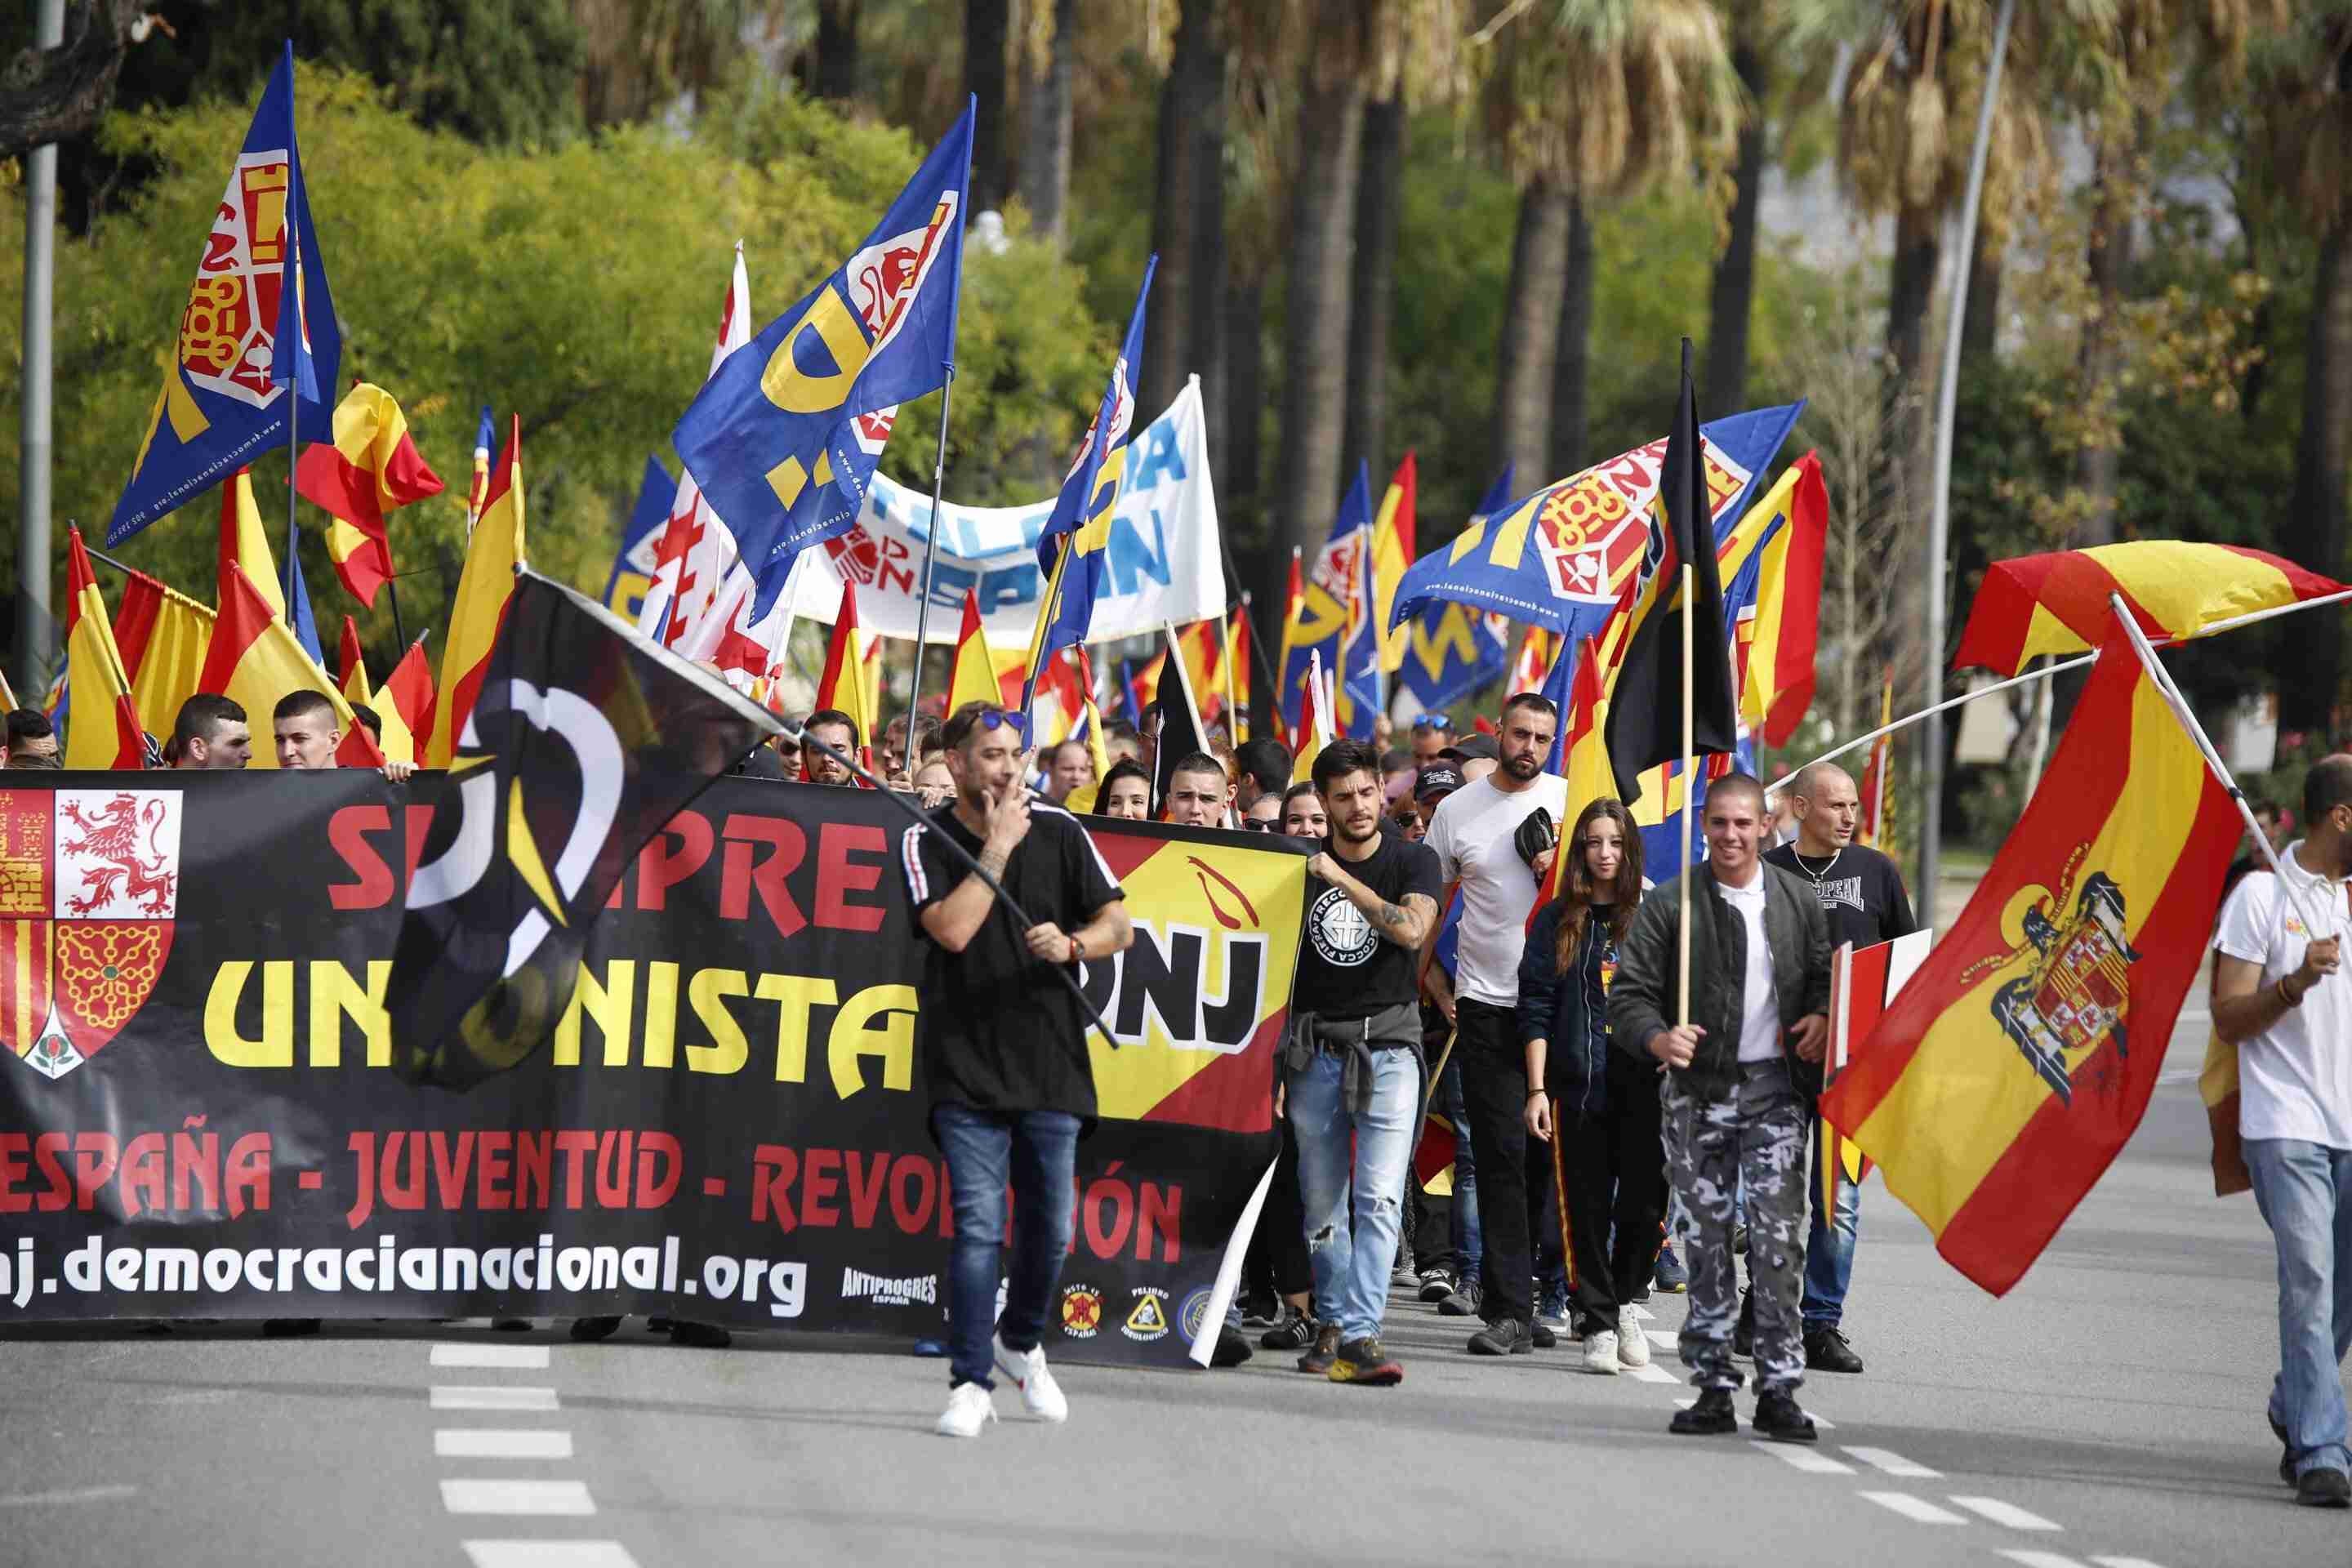 Nace una plataforma para denunciar "el aumento de agresiones fascistas" en Girona